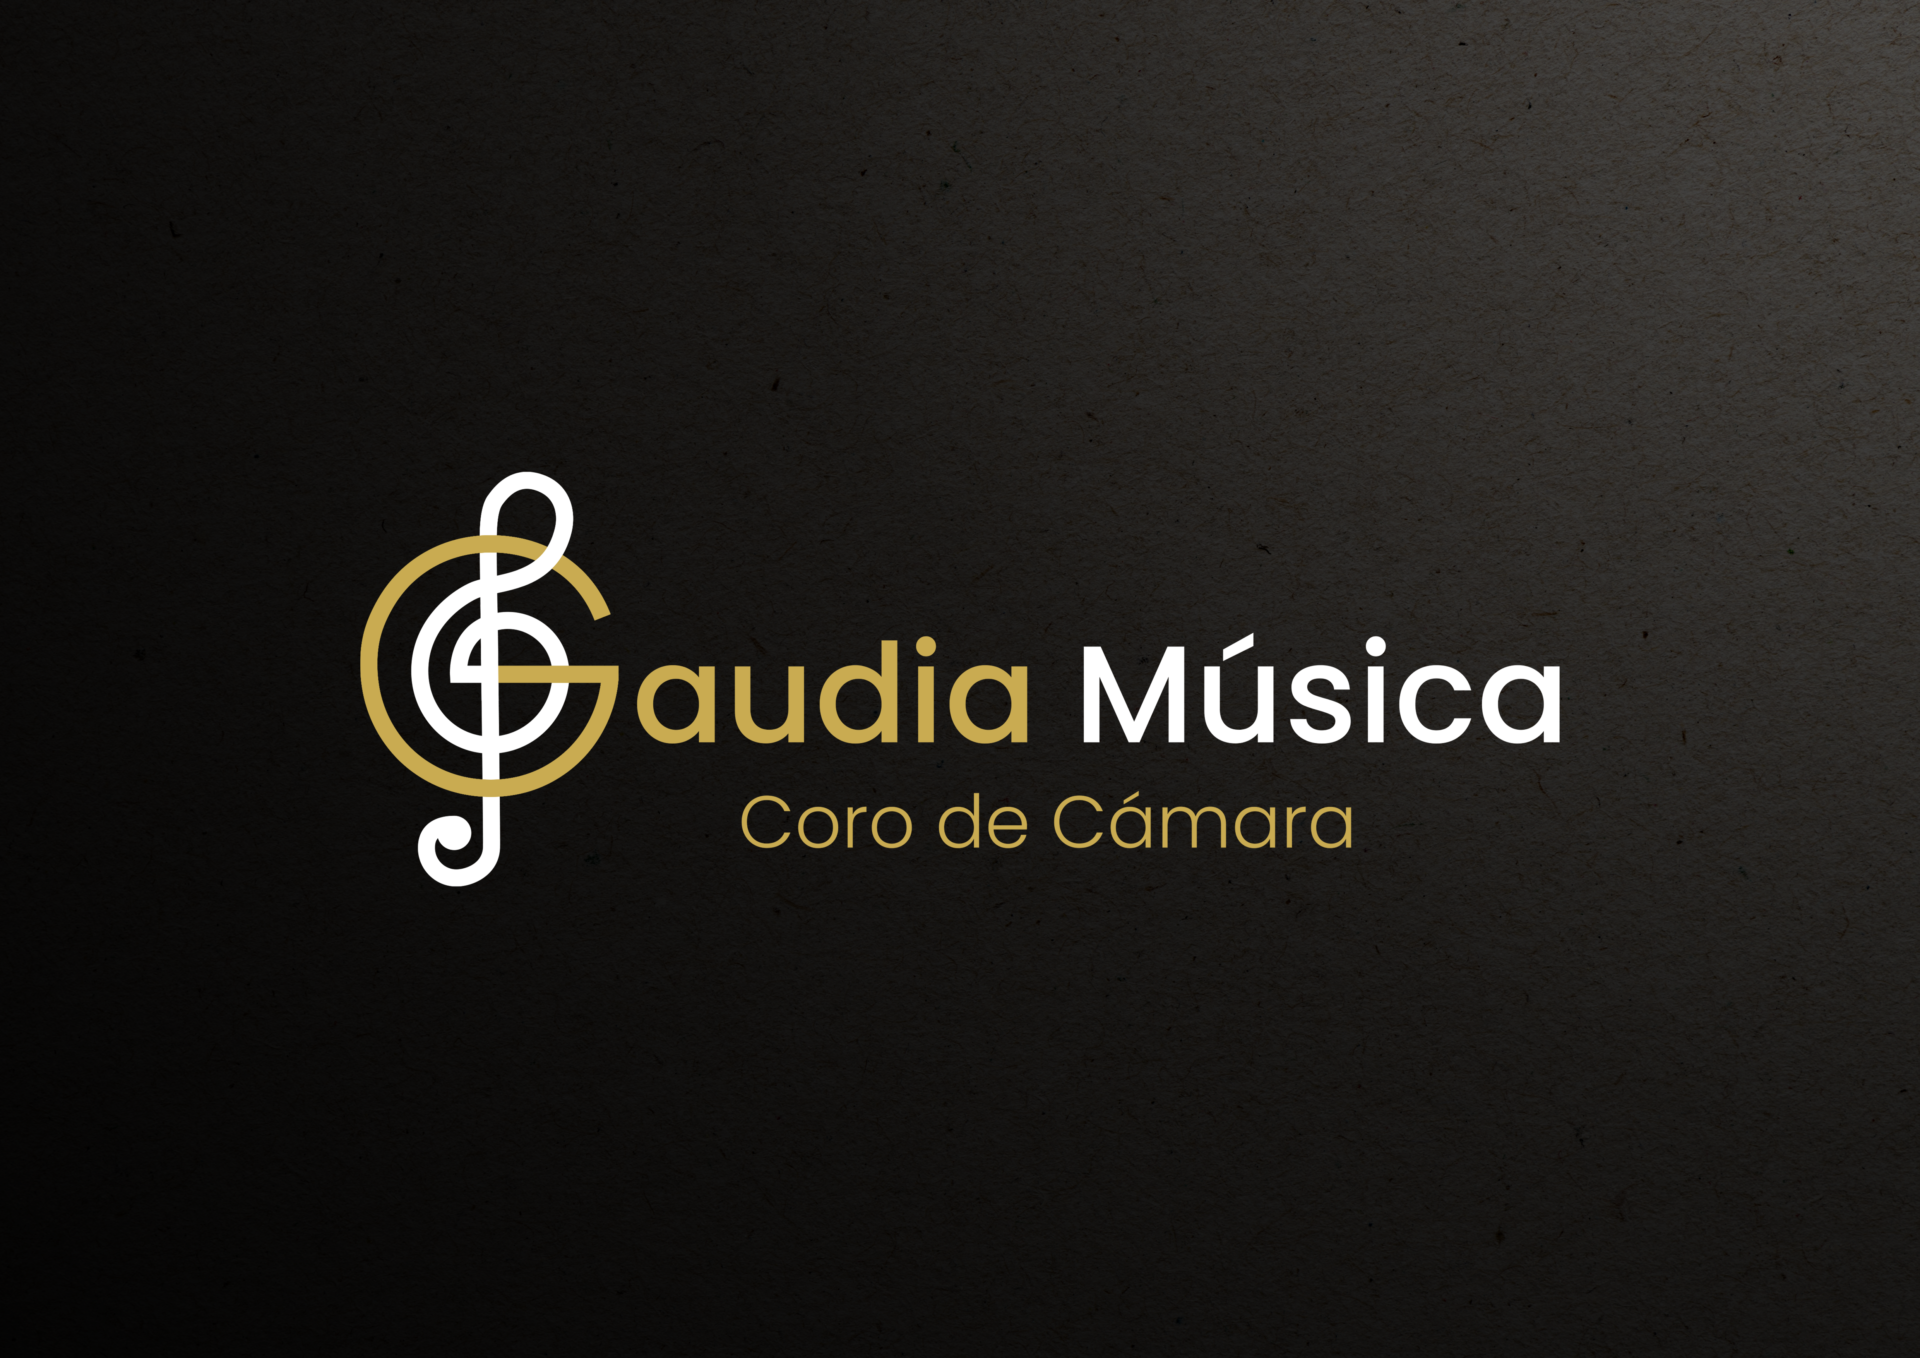 Gaudia-musica-02